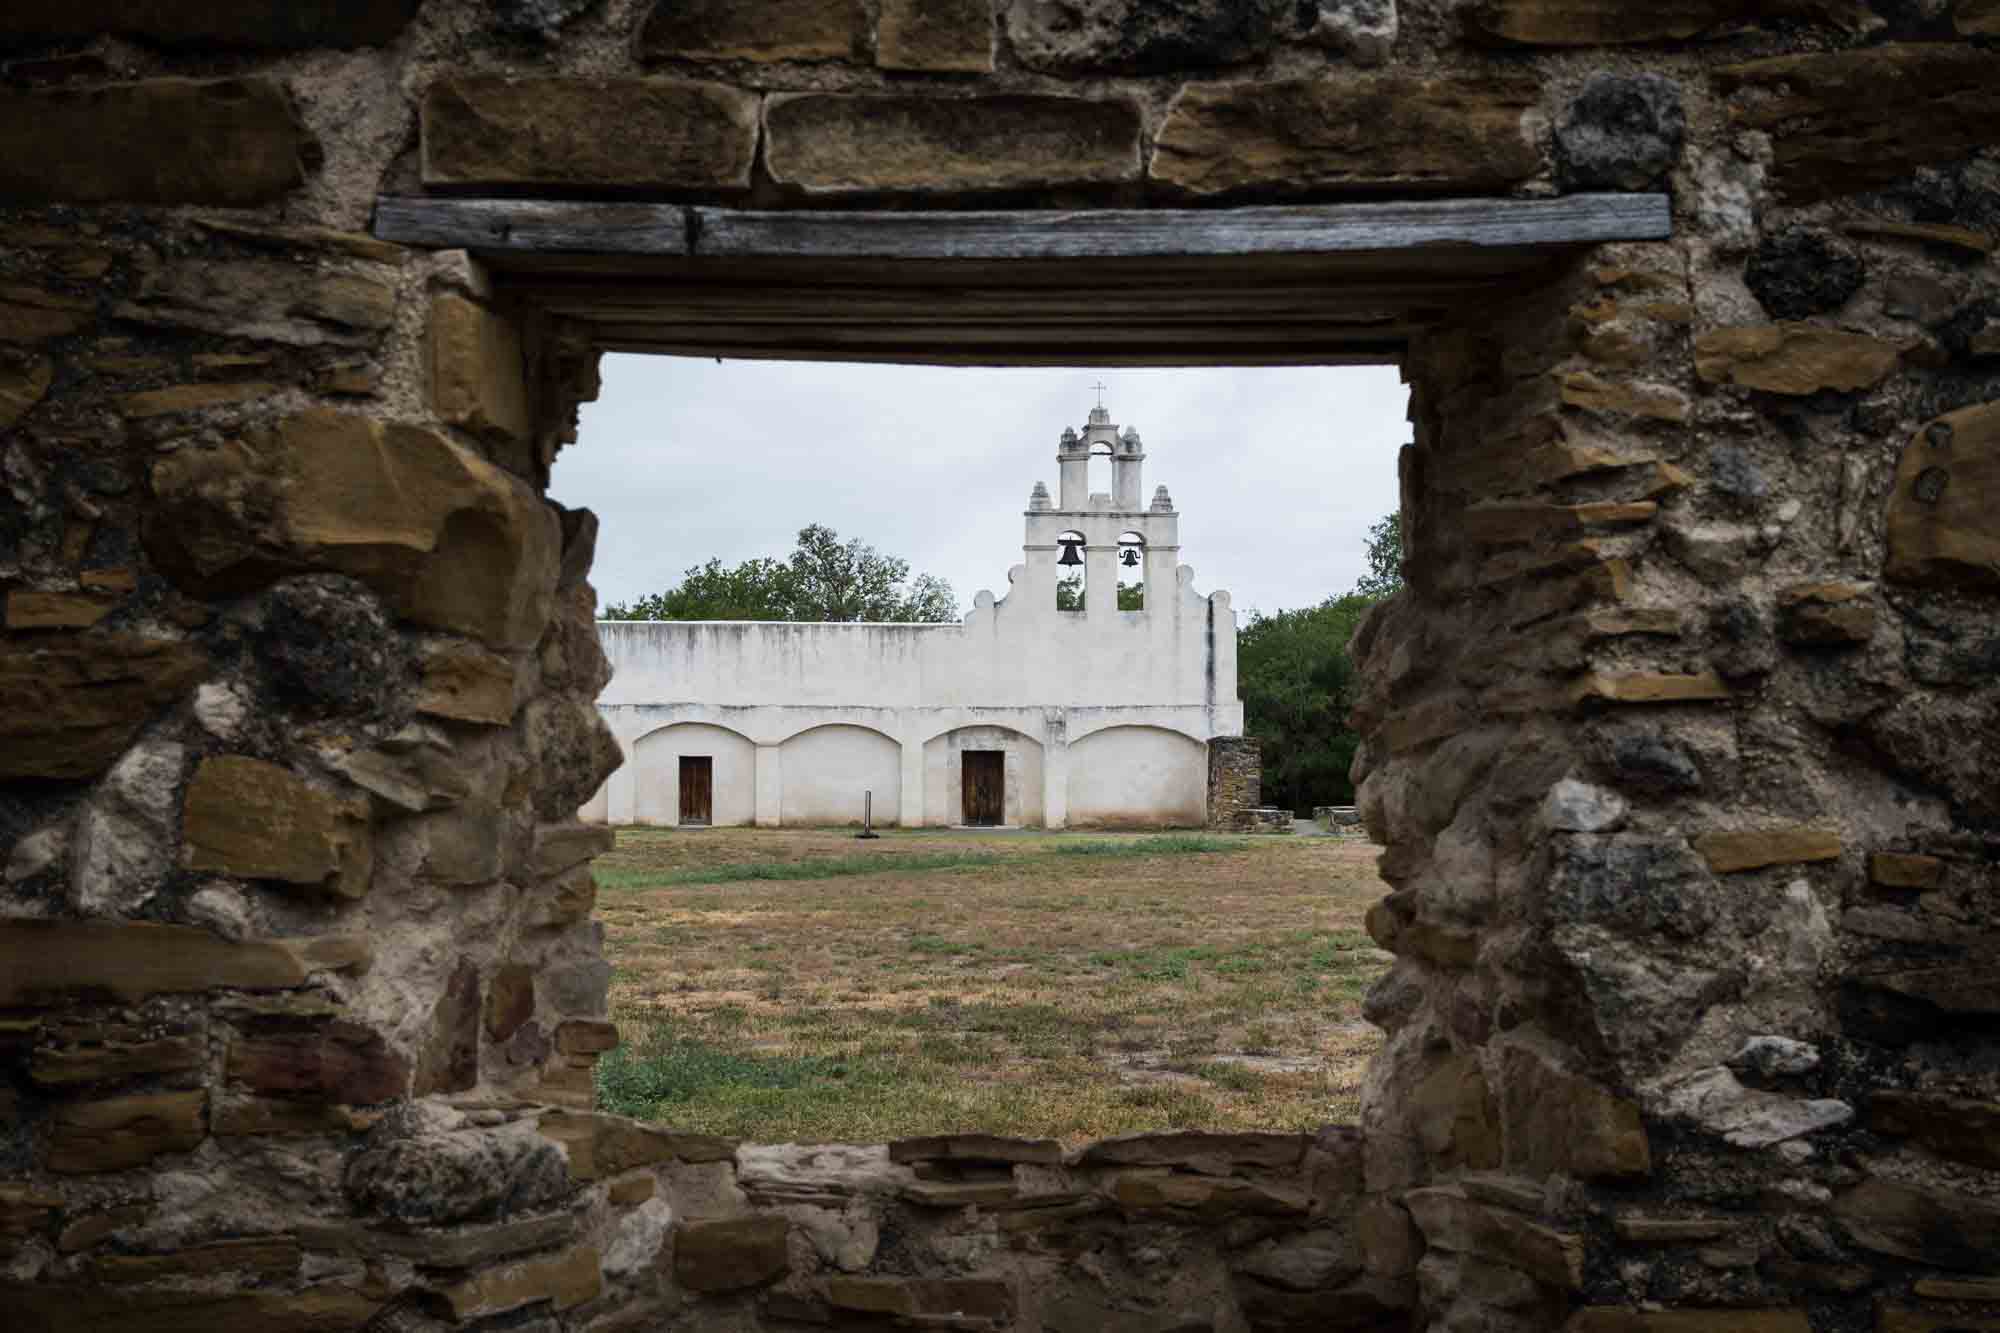 Church at Mission San Juan seen through a stone window in San Antonio